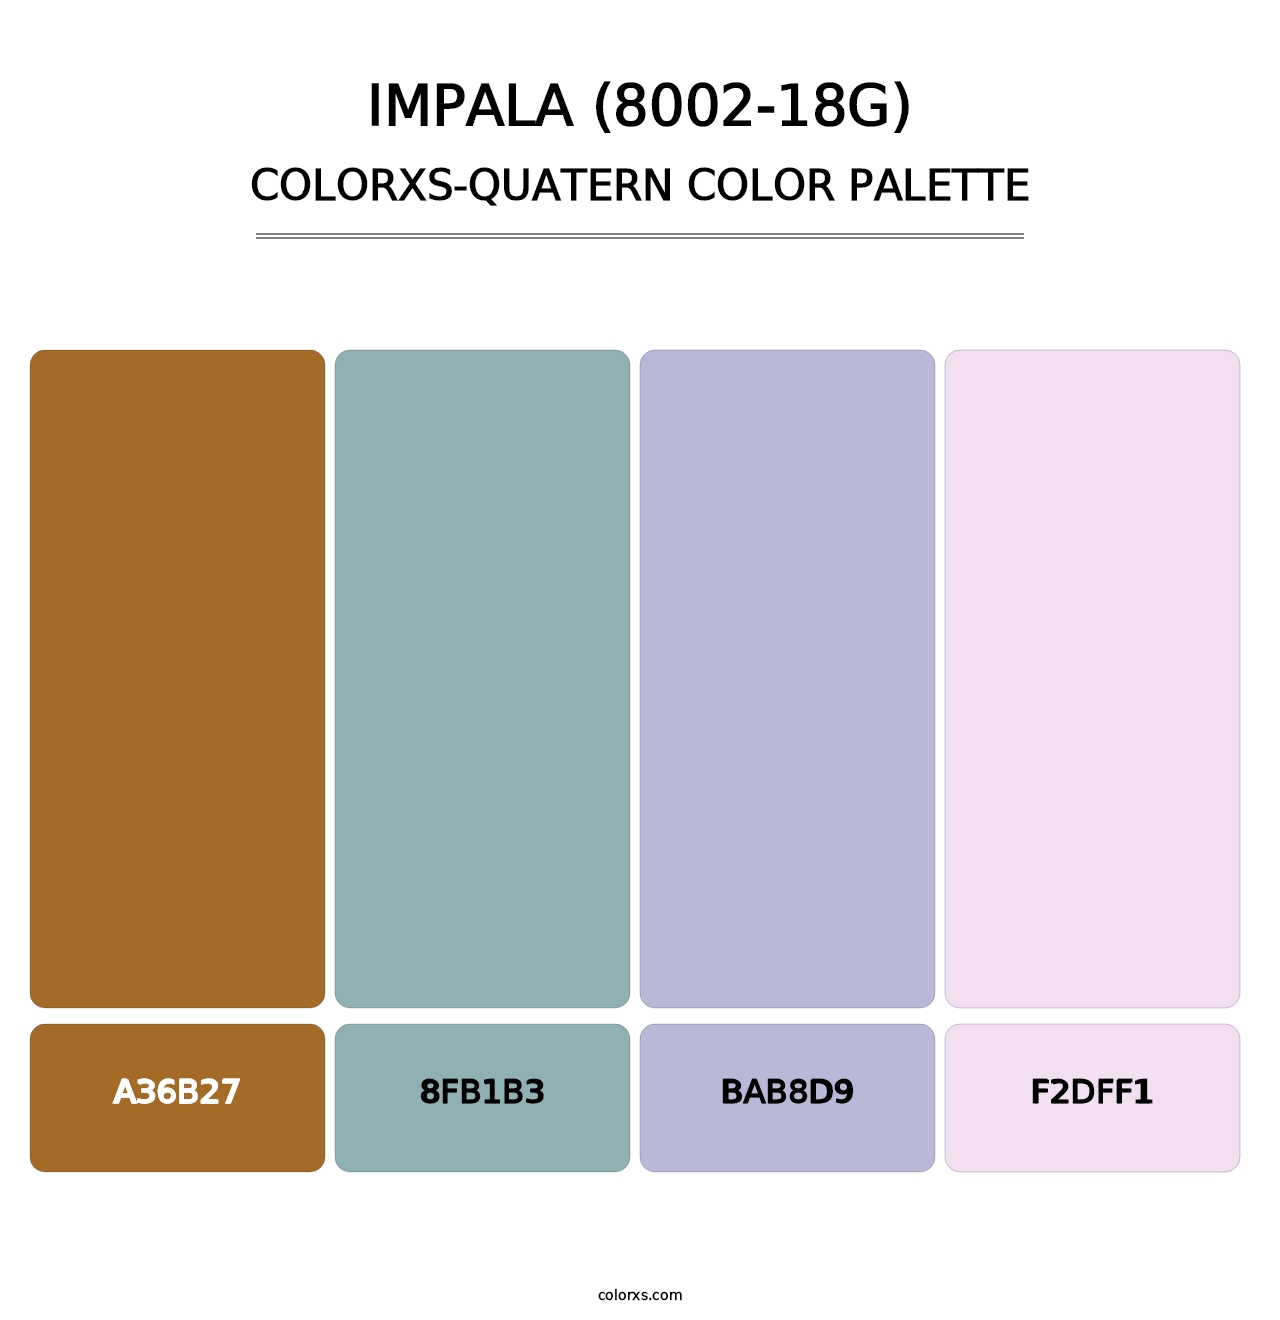 Impala (8002-18G) - Colorxs Quatern Palette